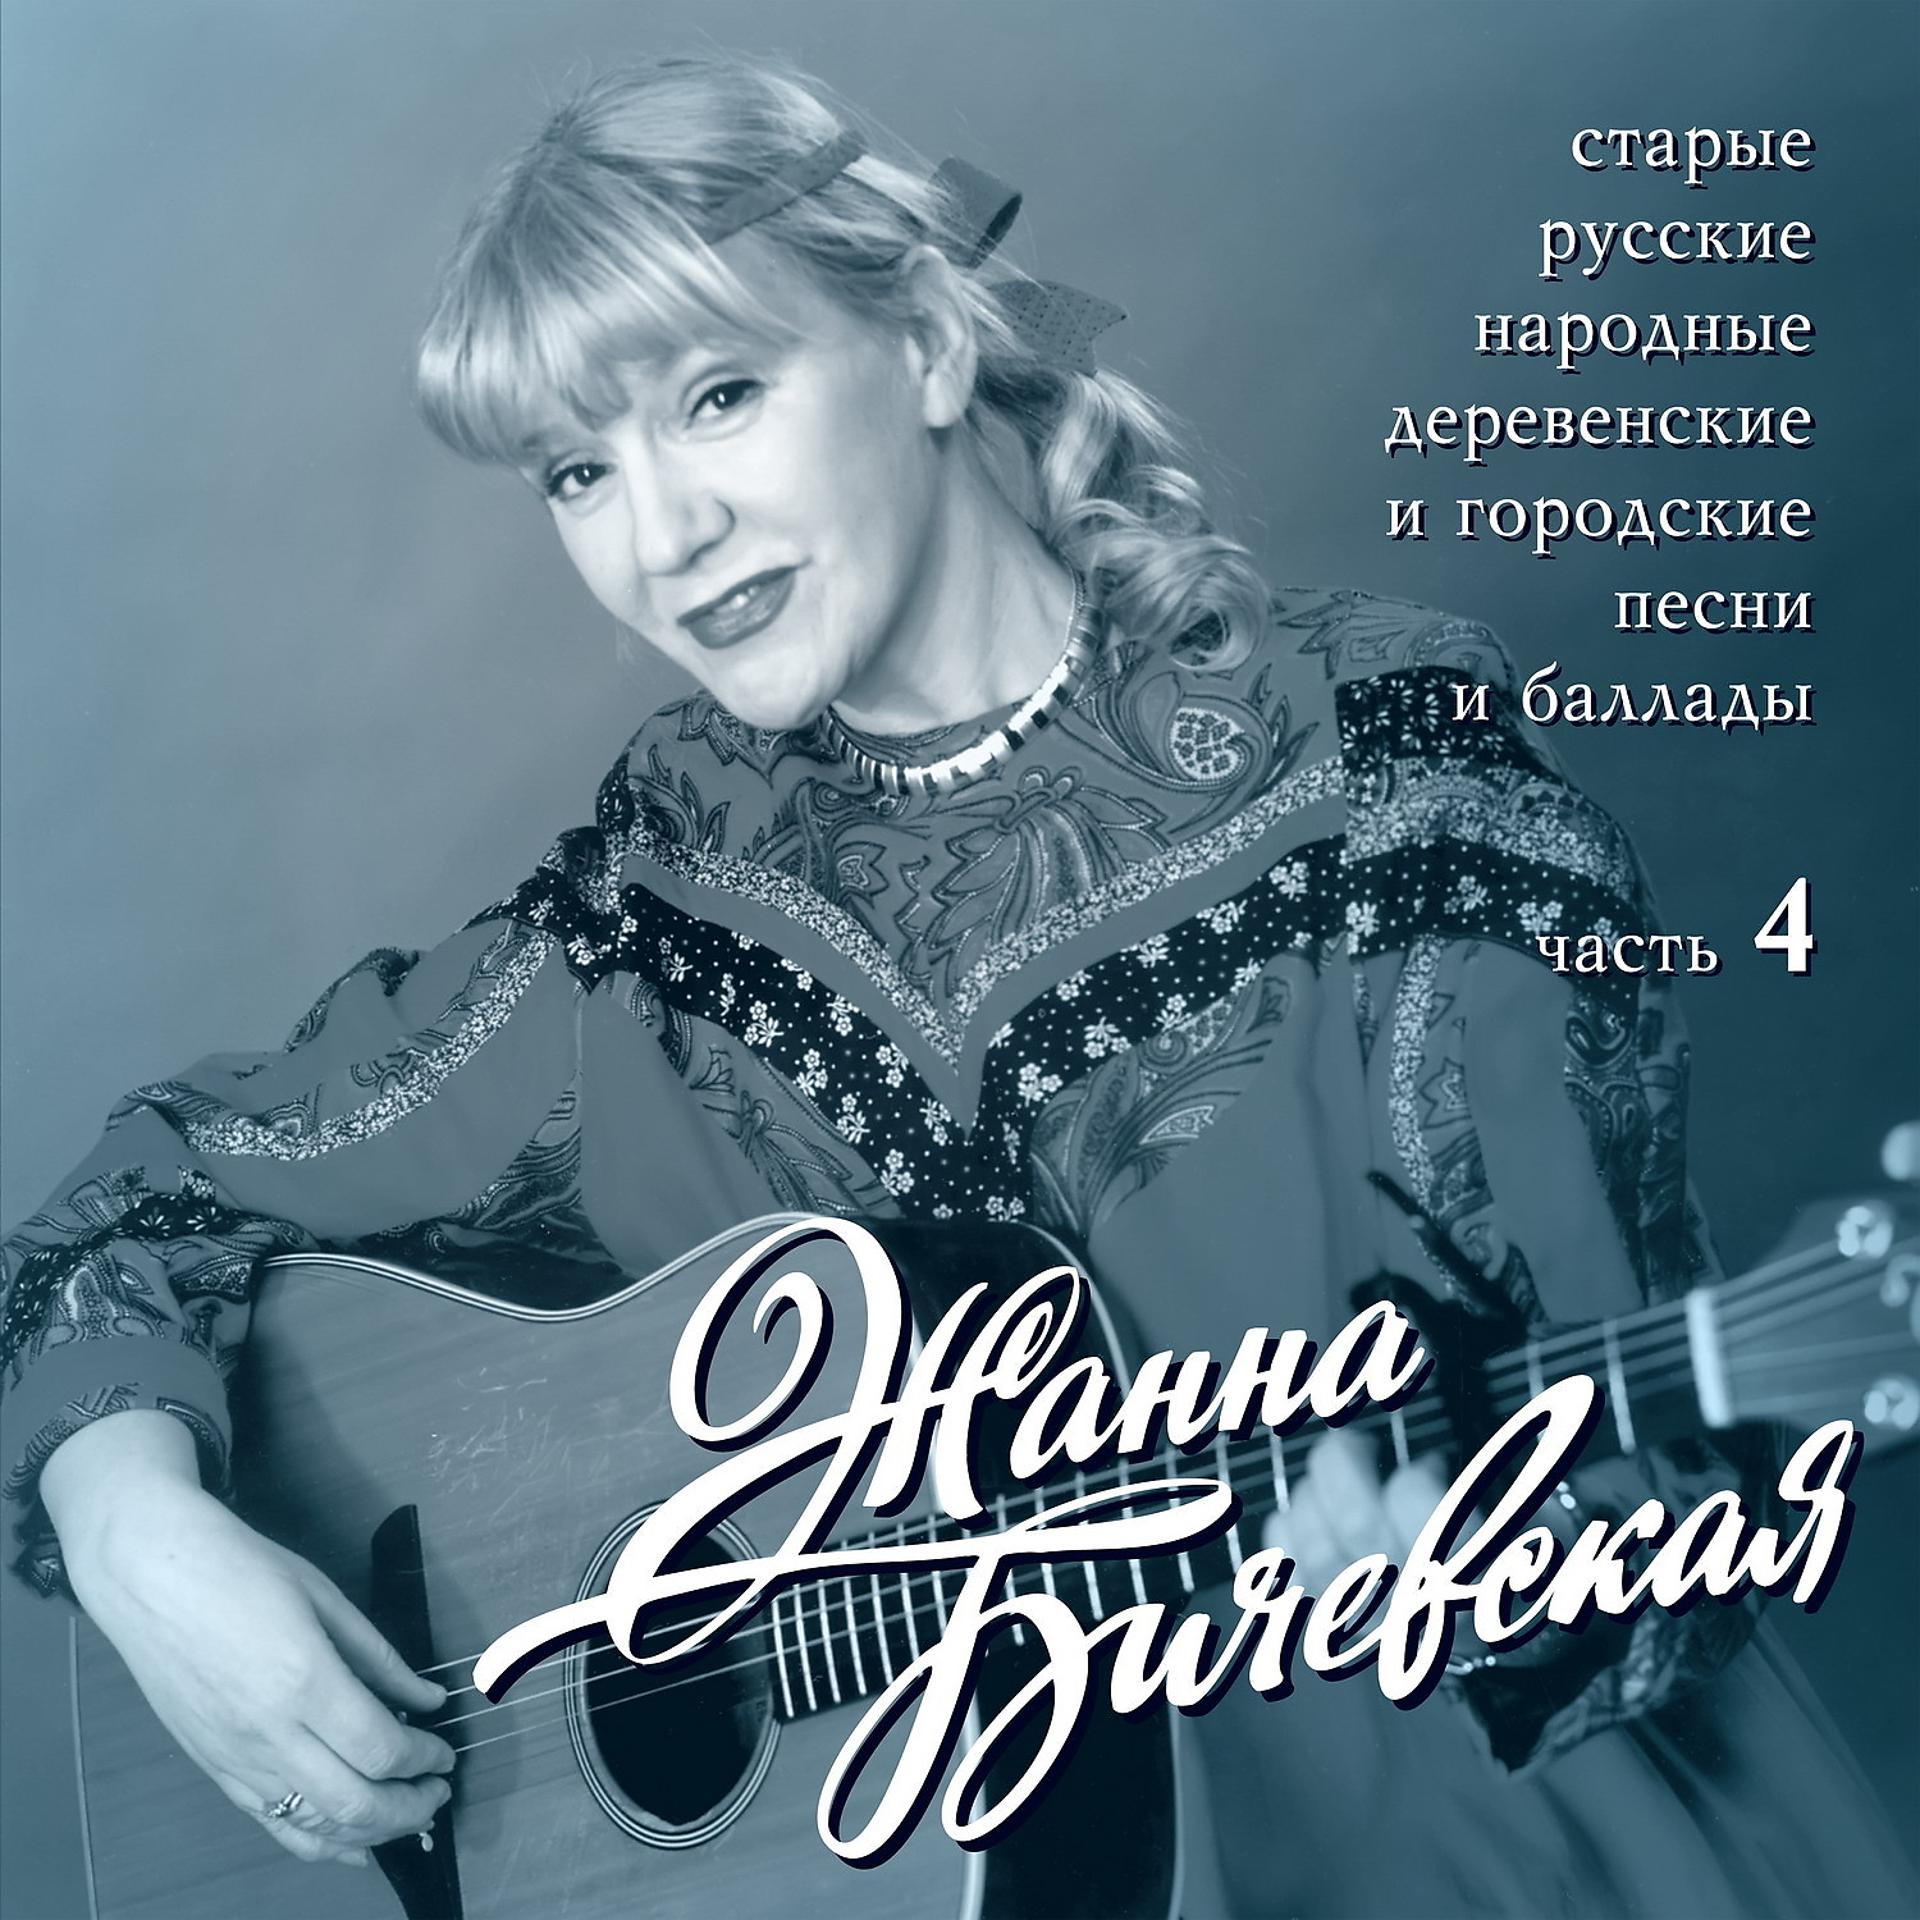 Русские песенники